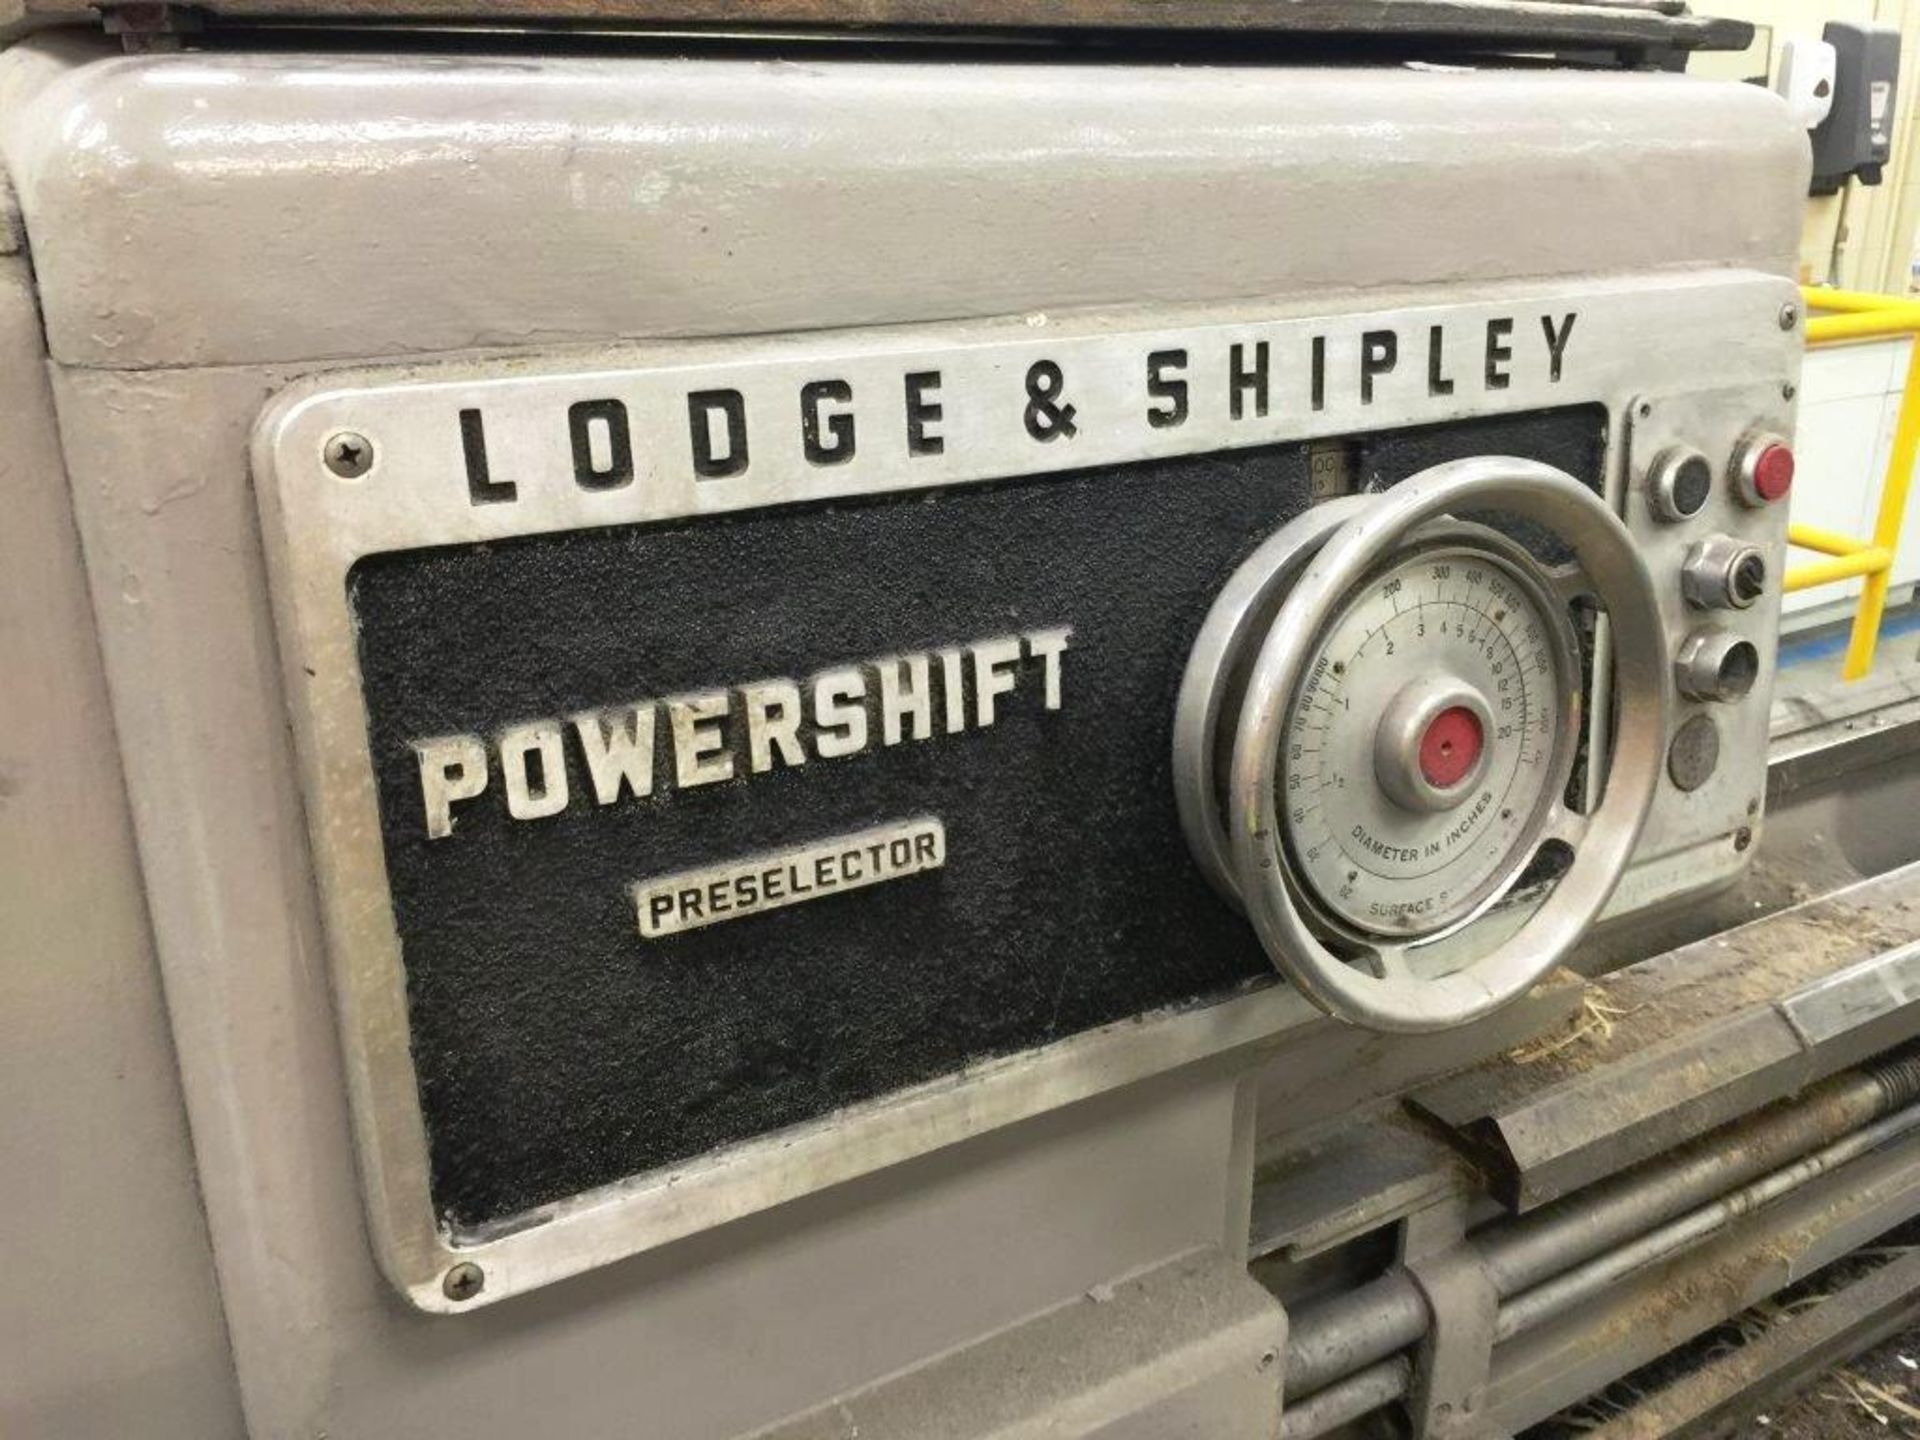 Lodge & Shipley 24" x 78" Powershift Lathe PS2013-17 - Image 2 of 8